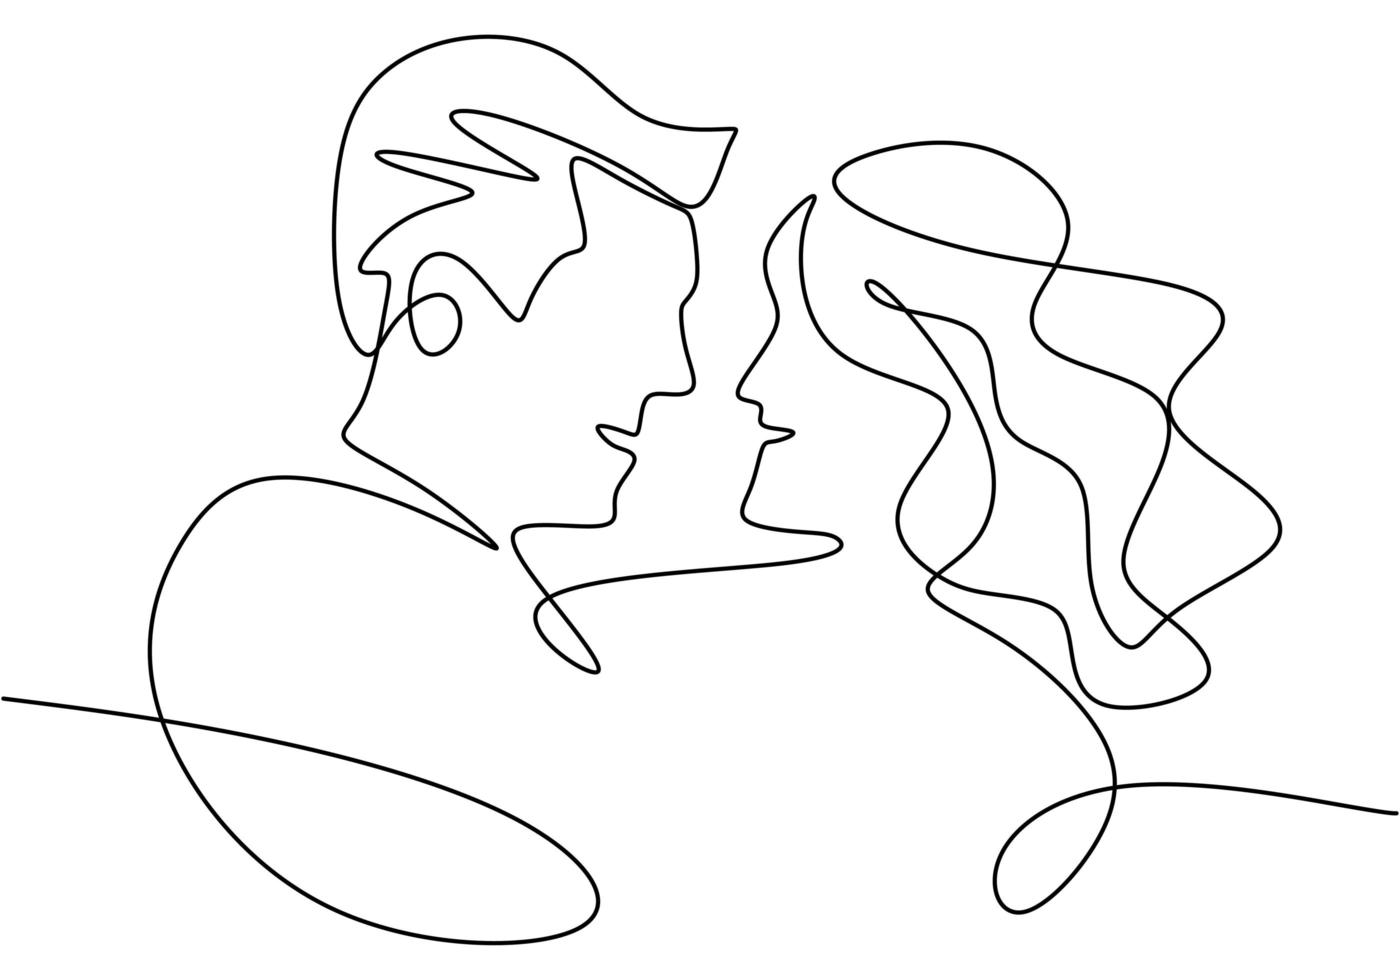 disegno in linea continua. ritratto di coppia romantica. amanti tema concept design. minimalismo disegnato a mano. vettore